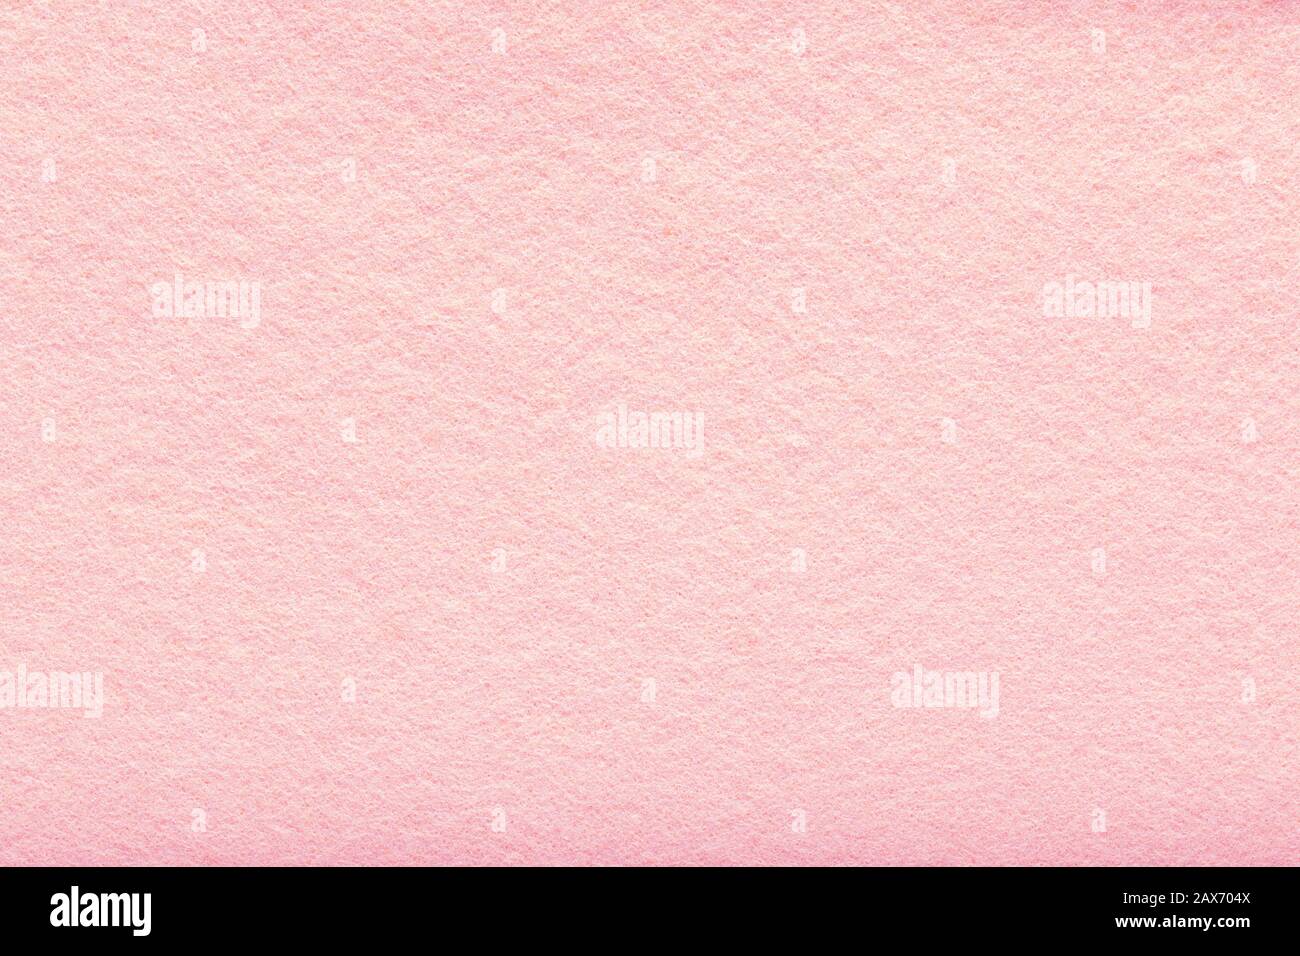 Velvet Texture of Seamless Pink Woolen Felt. Light Pink Matte